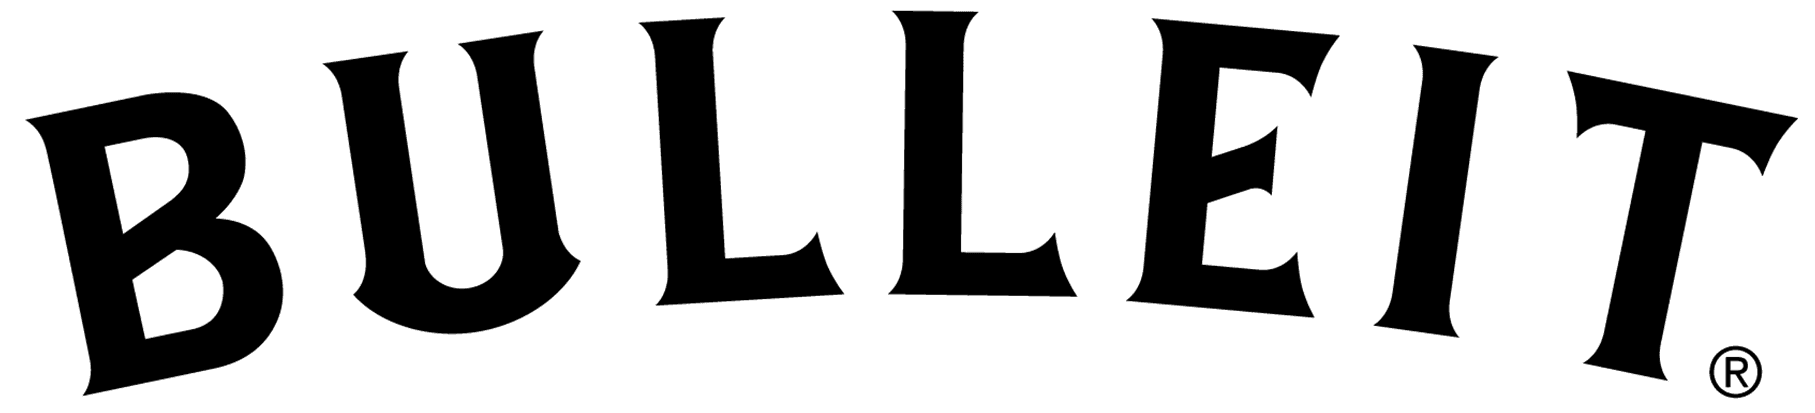 Файл:Bulleit-logo.png